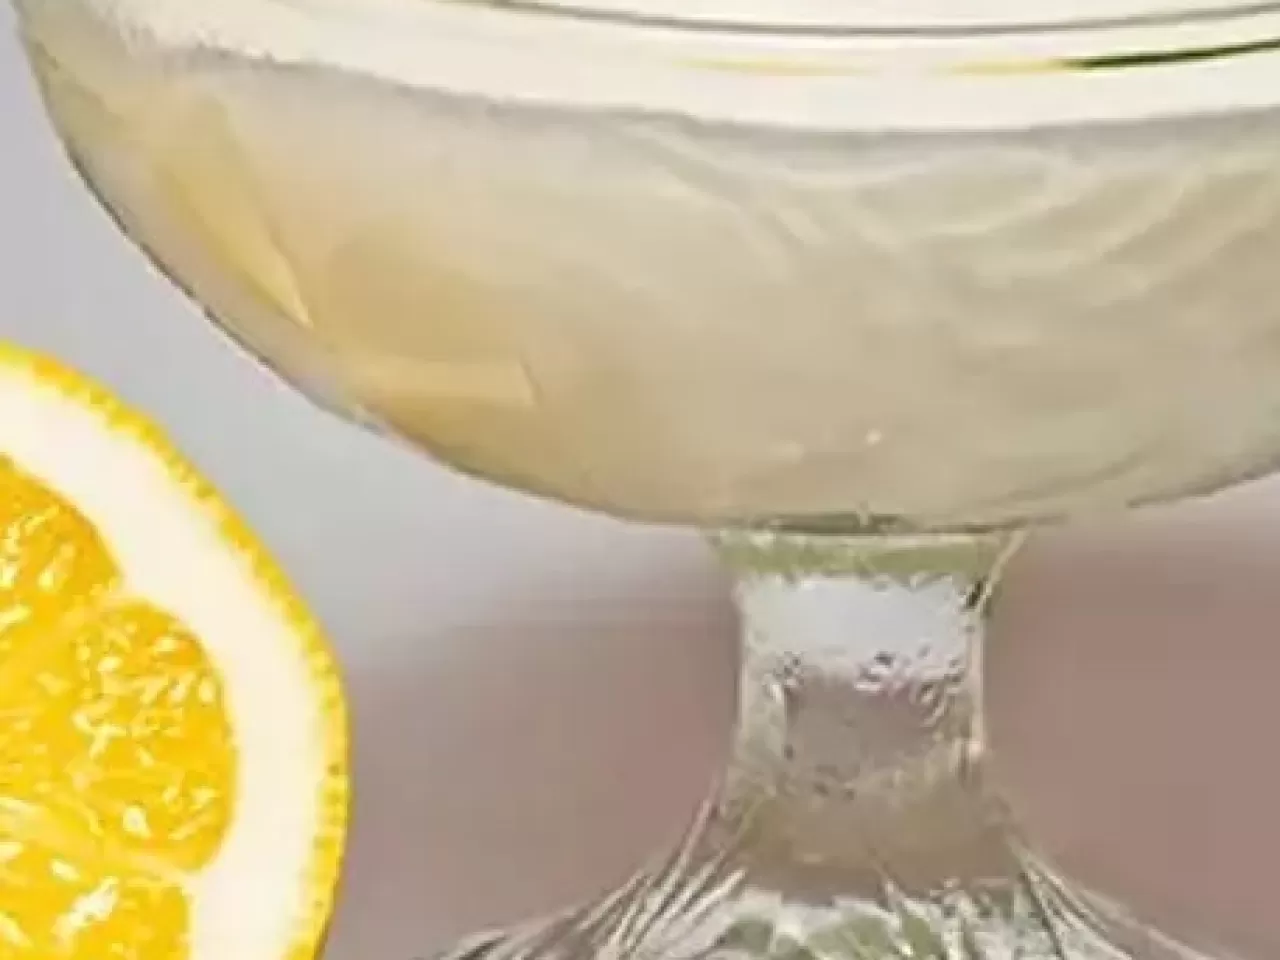 50 dakikada limonlu puding kek tarifiniz hazır! Herkesin favorisi olacak